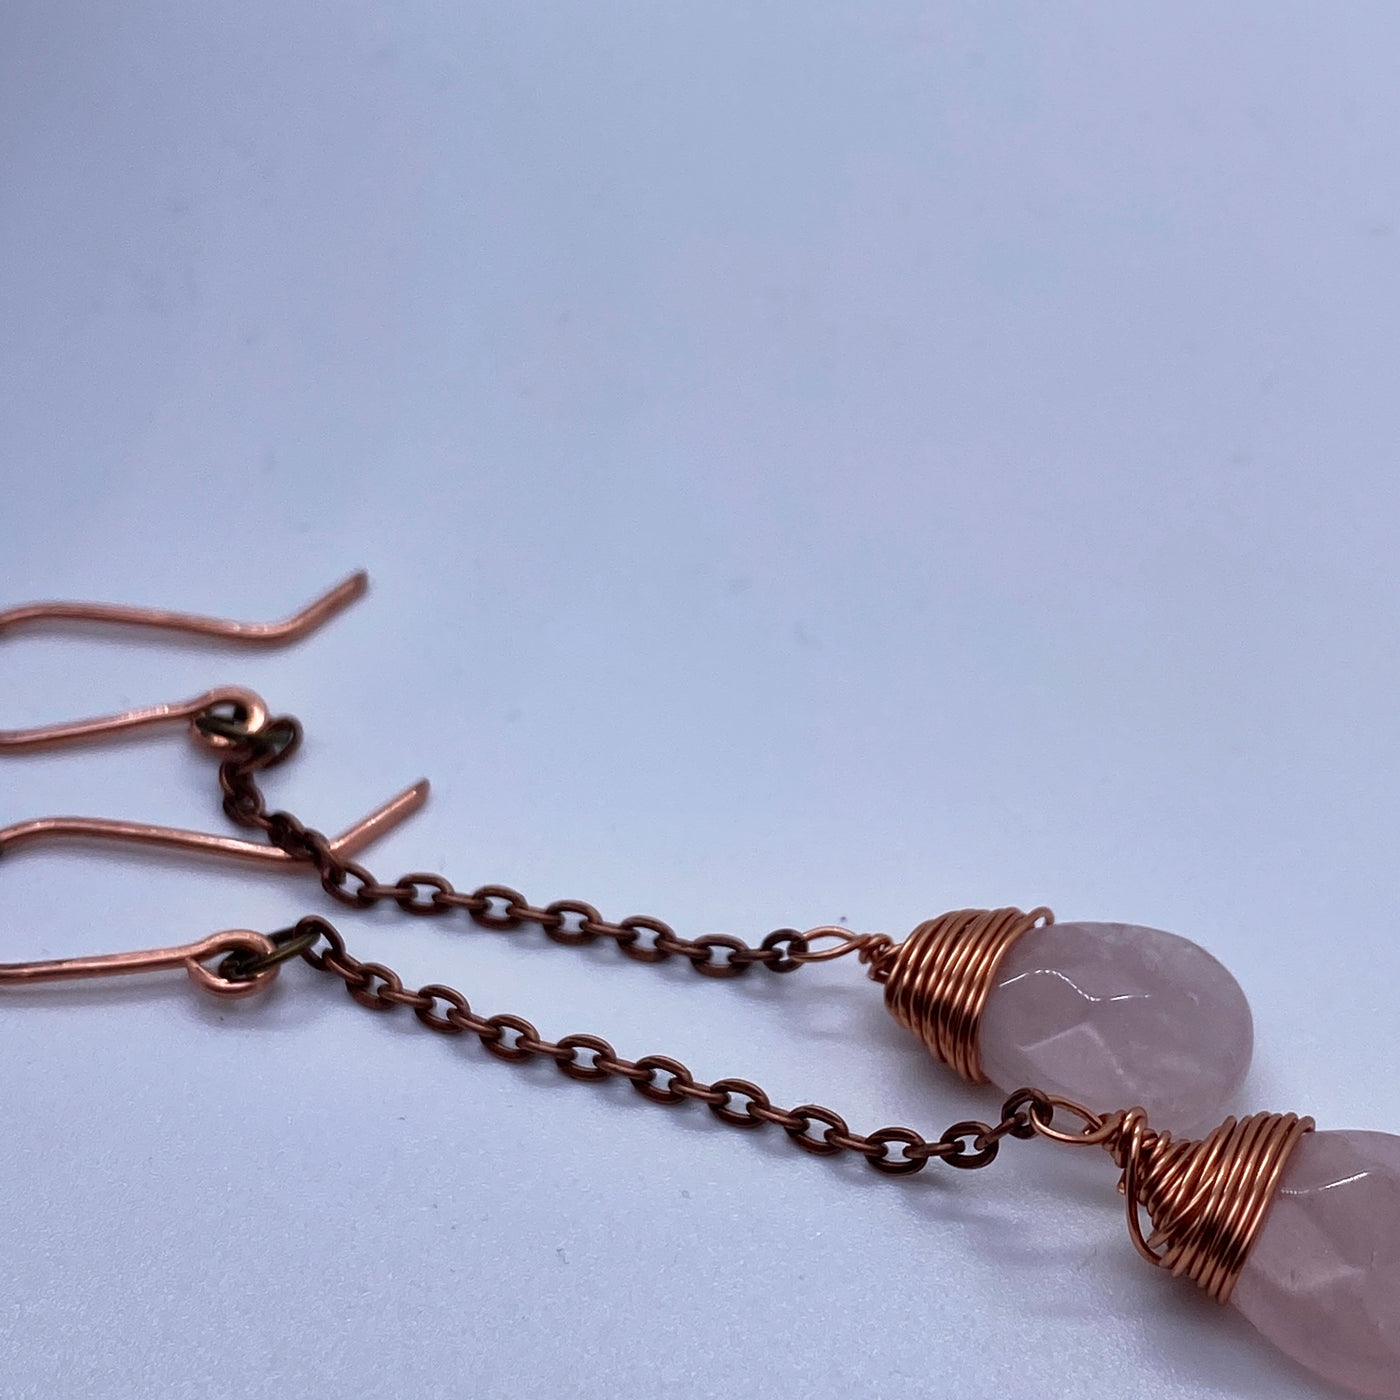 Rose quartz briolettes wrapped in copper on copper chain